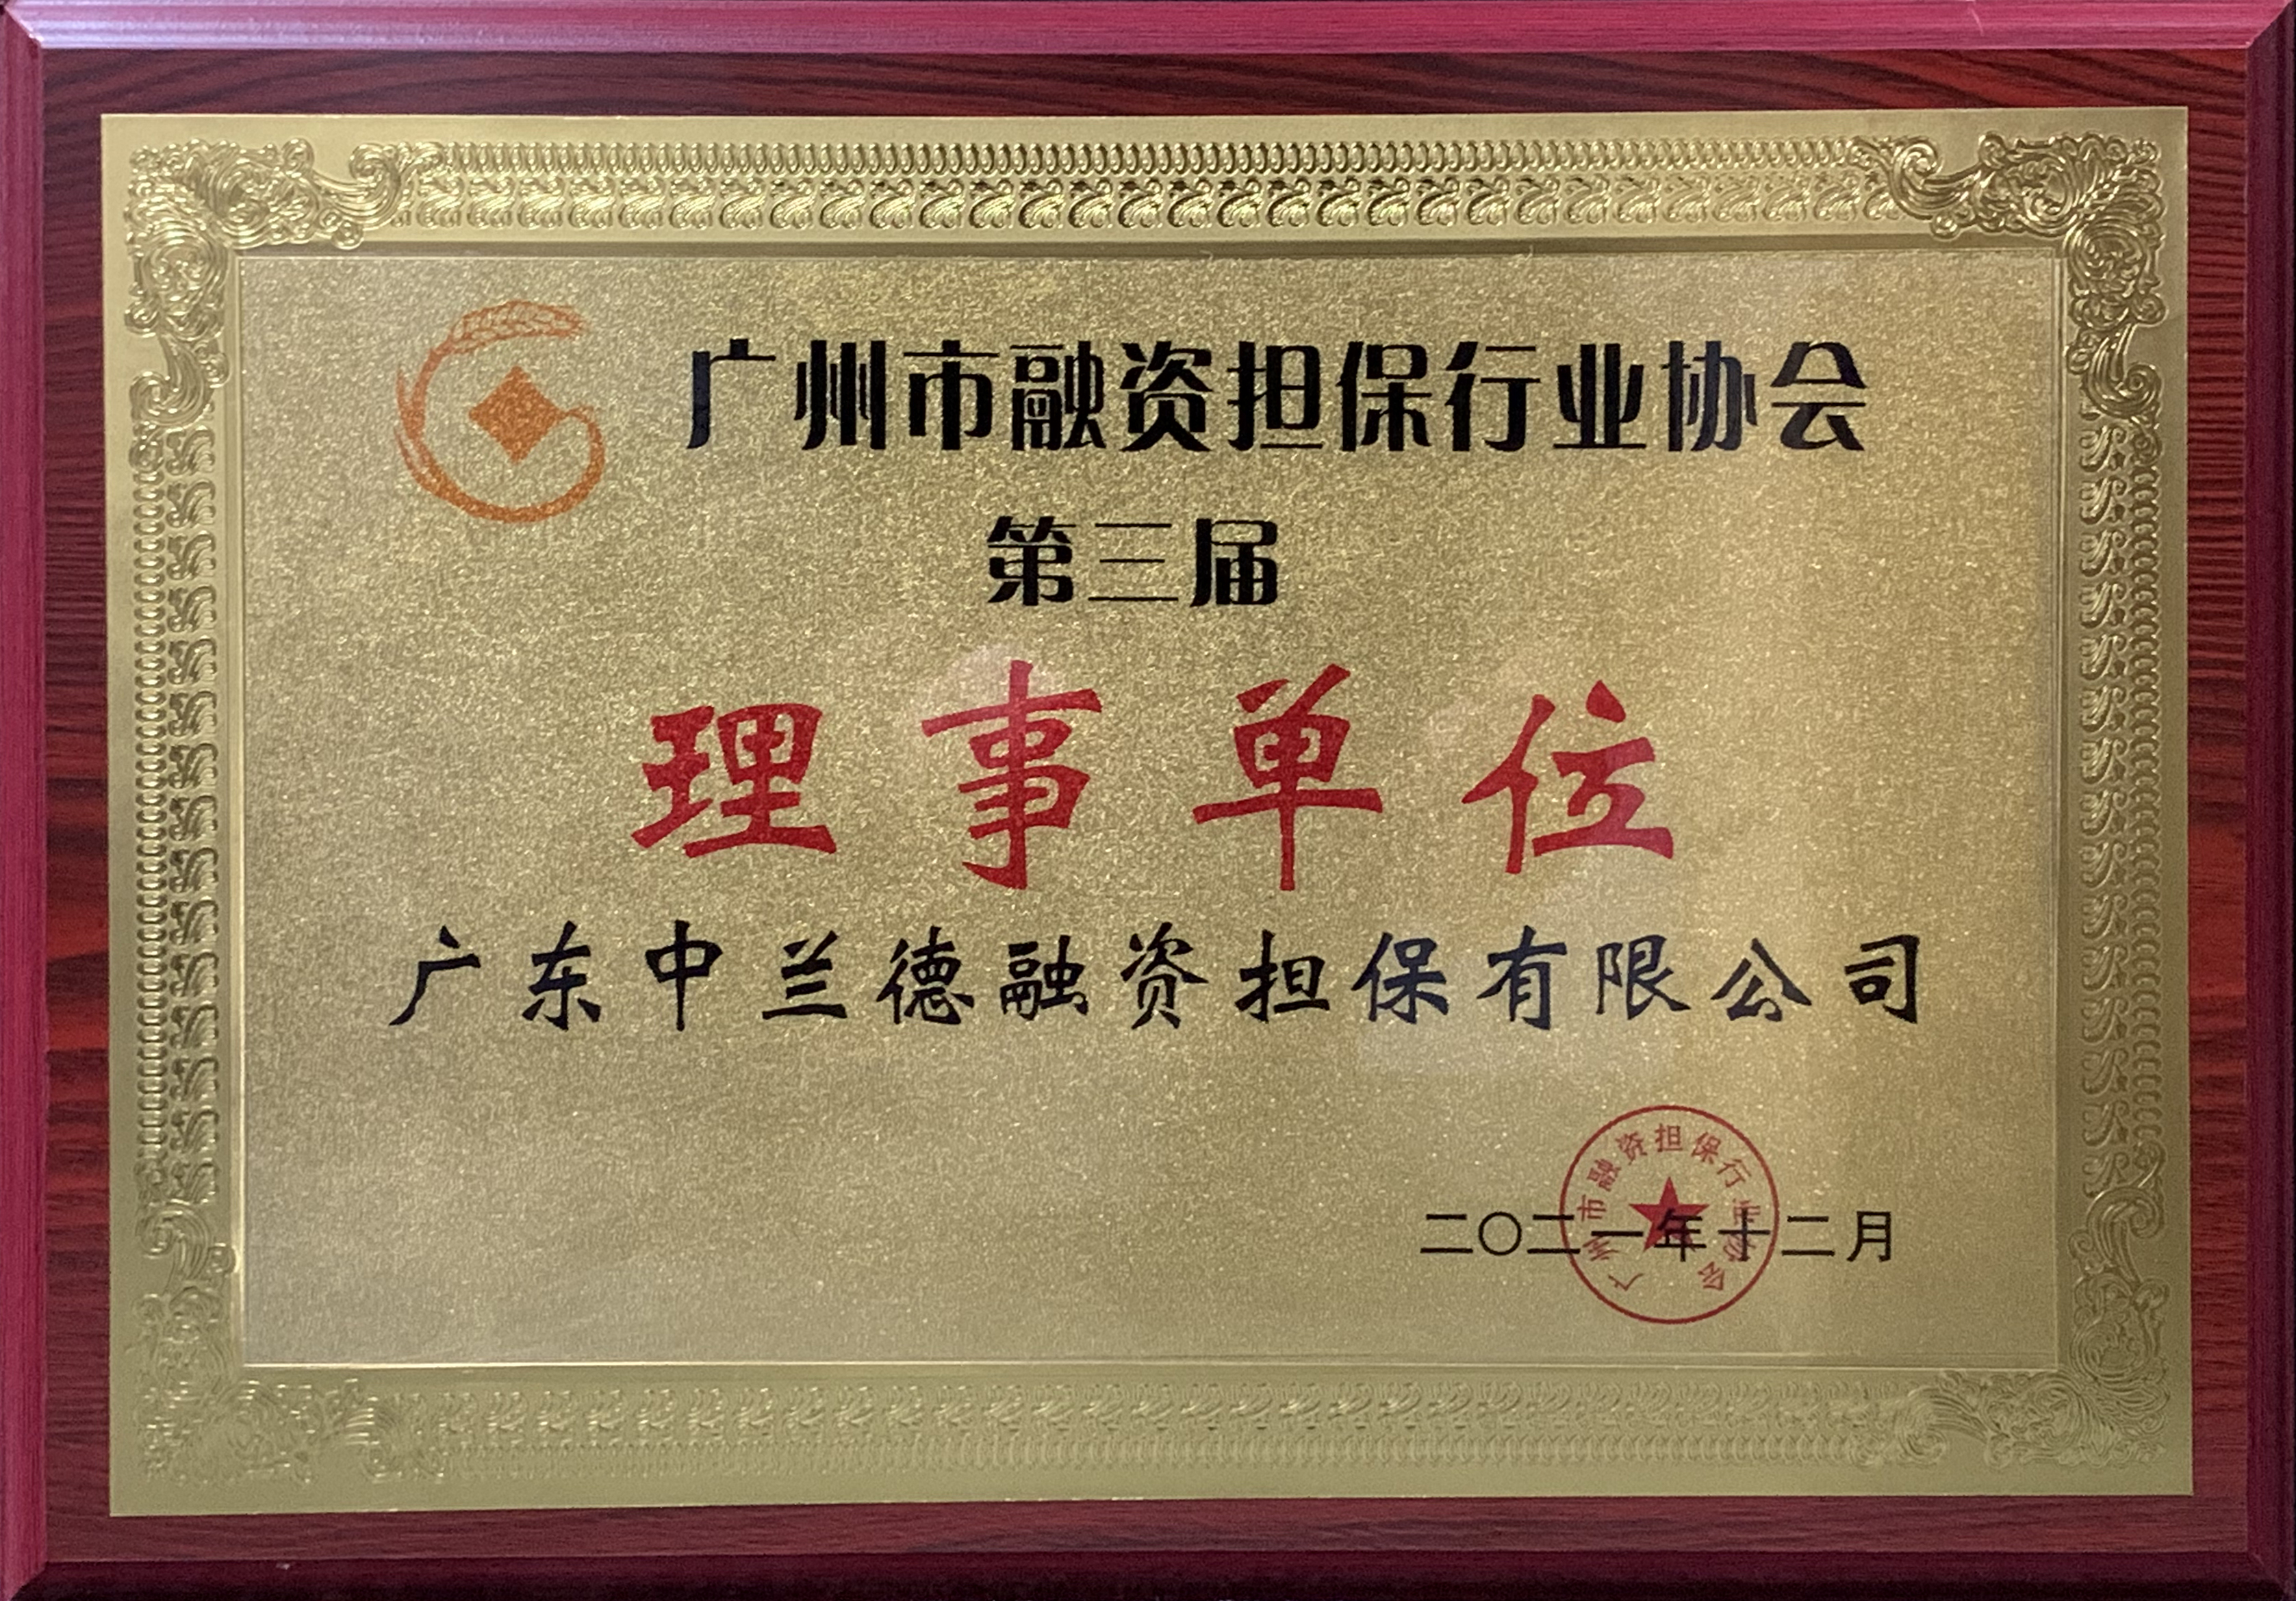 广东中兰德融资担保有限公司当选广州市融资担保行业协会第三届理事单位